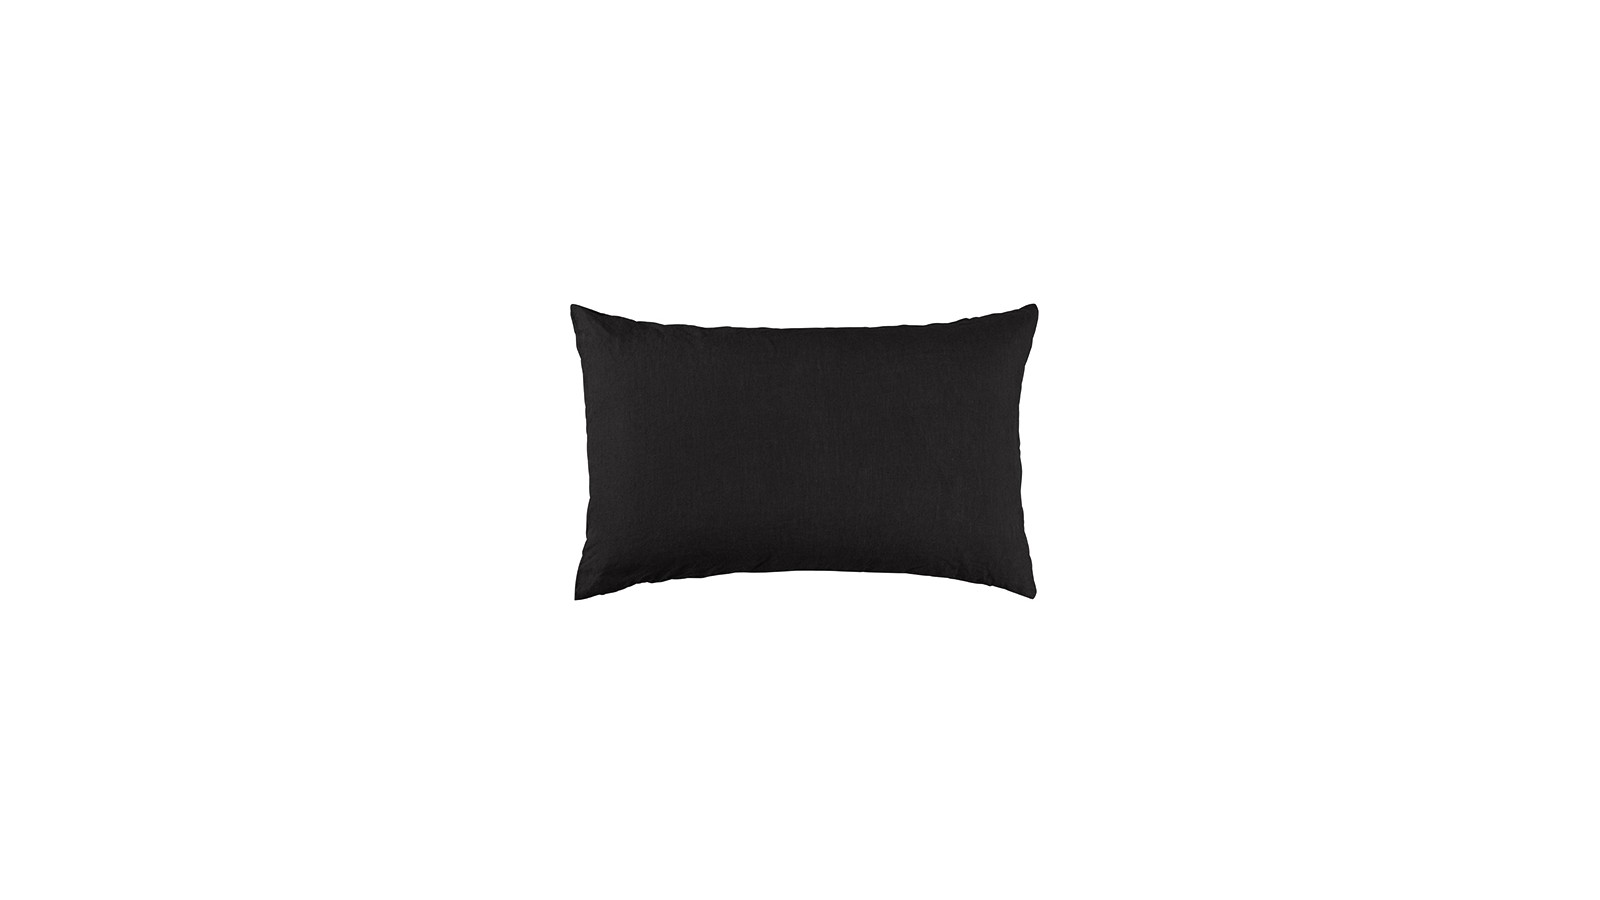 Housse de coussin rectangulaire 30 x 40 cm en lin lavé uni Noir Noir